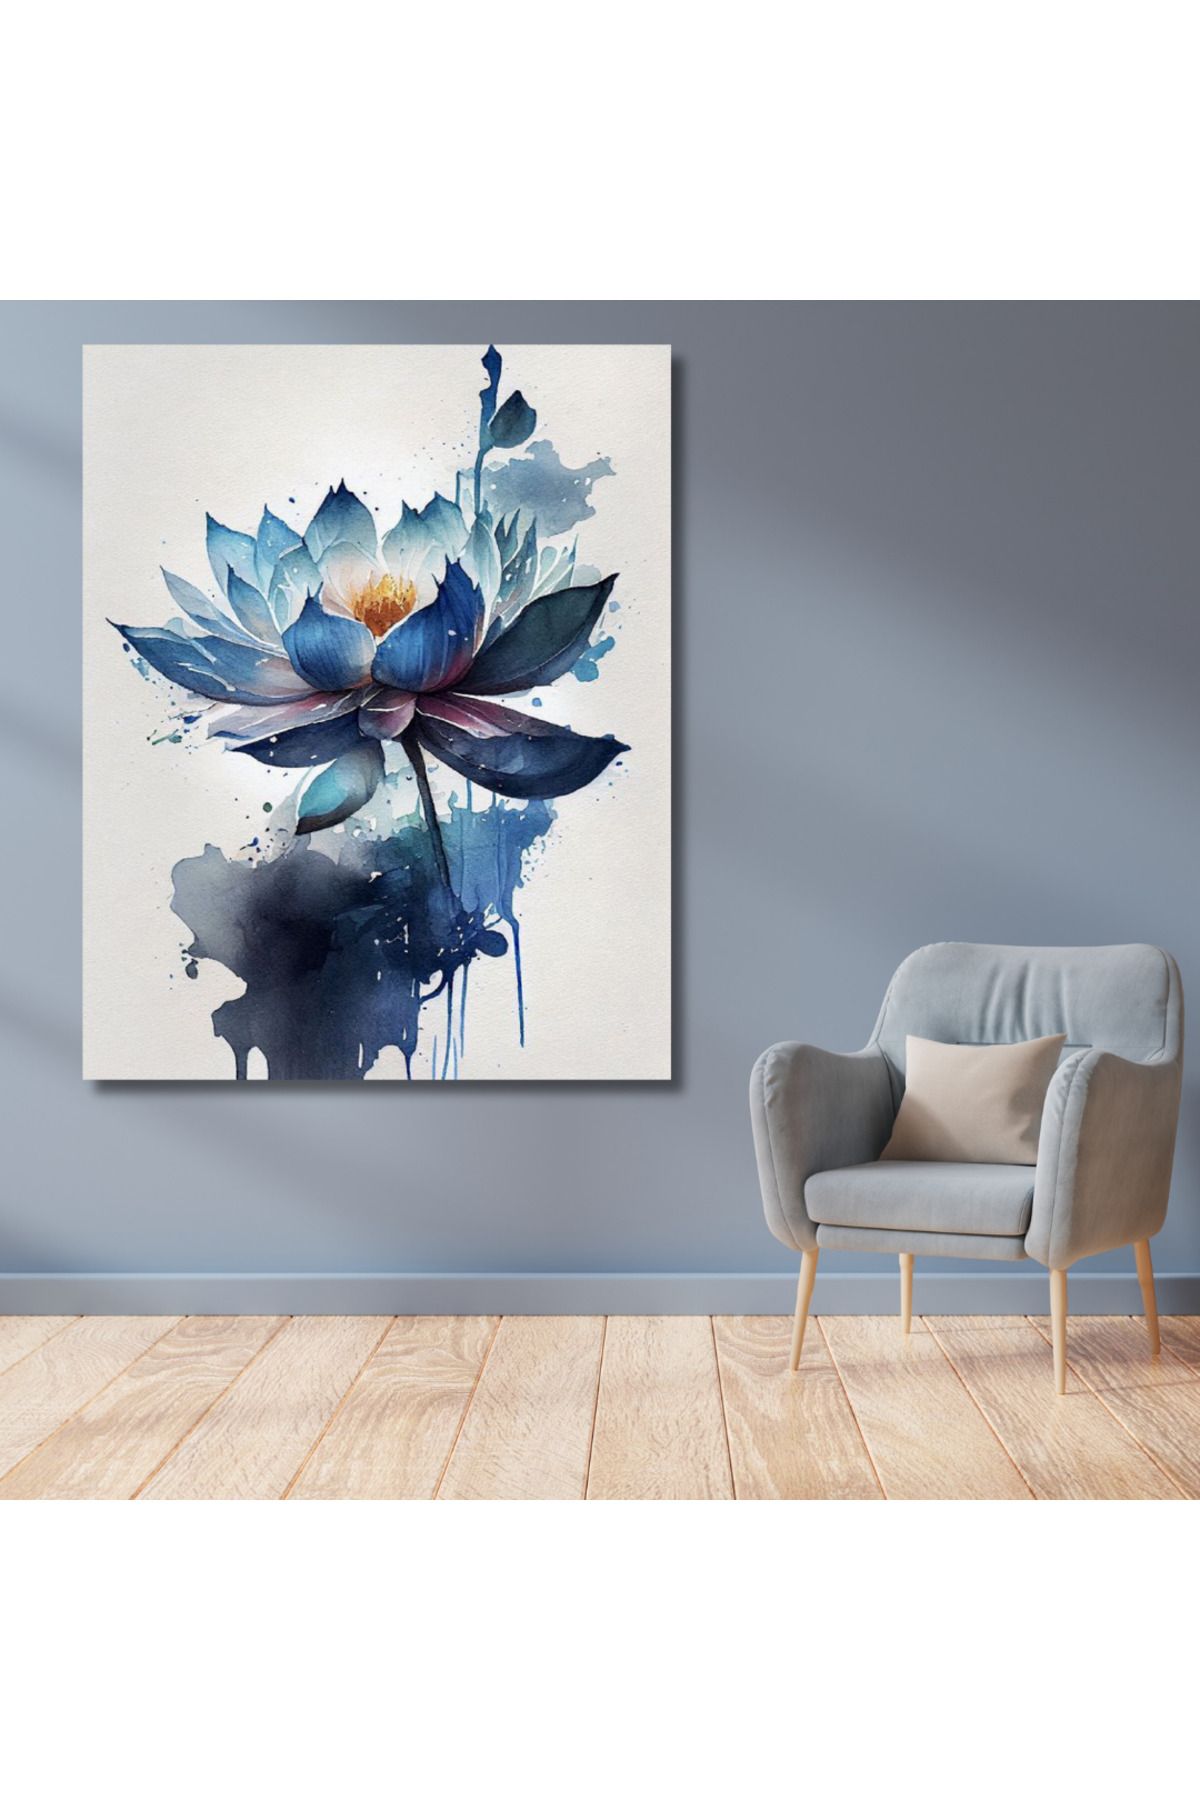 LİLYHOBBYLAND Sayılarla Boyama Hobi Seti 40x50 cm (Çerçeveli- Renkli Baskılı): Mavi Lotus Çiçeği